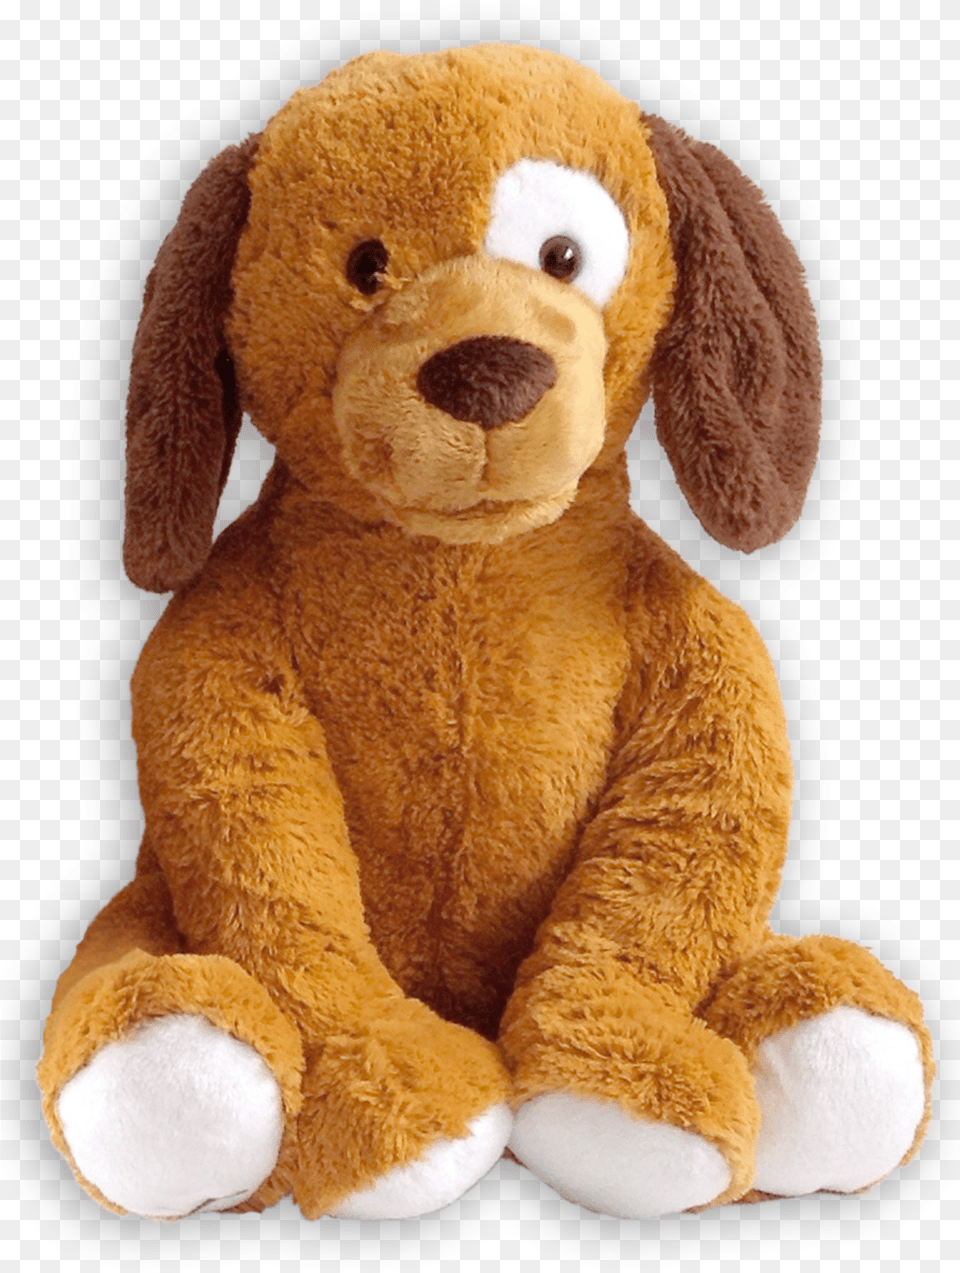 Stuffed Animals Cuddly Toys Stuffed Animal Dog, Plush, Toy, Teddy Bear Png